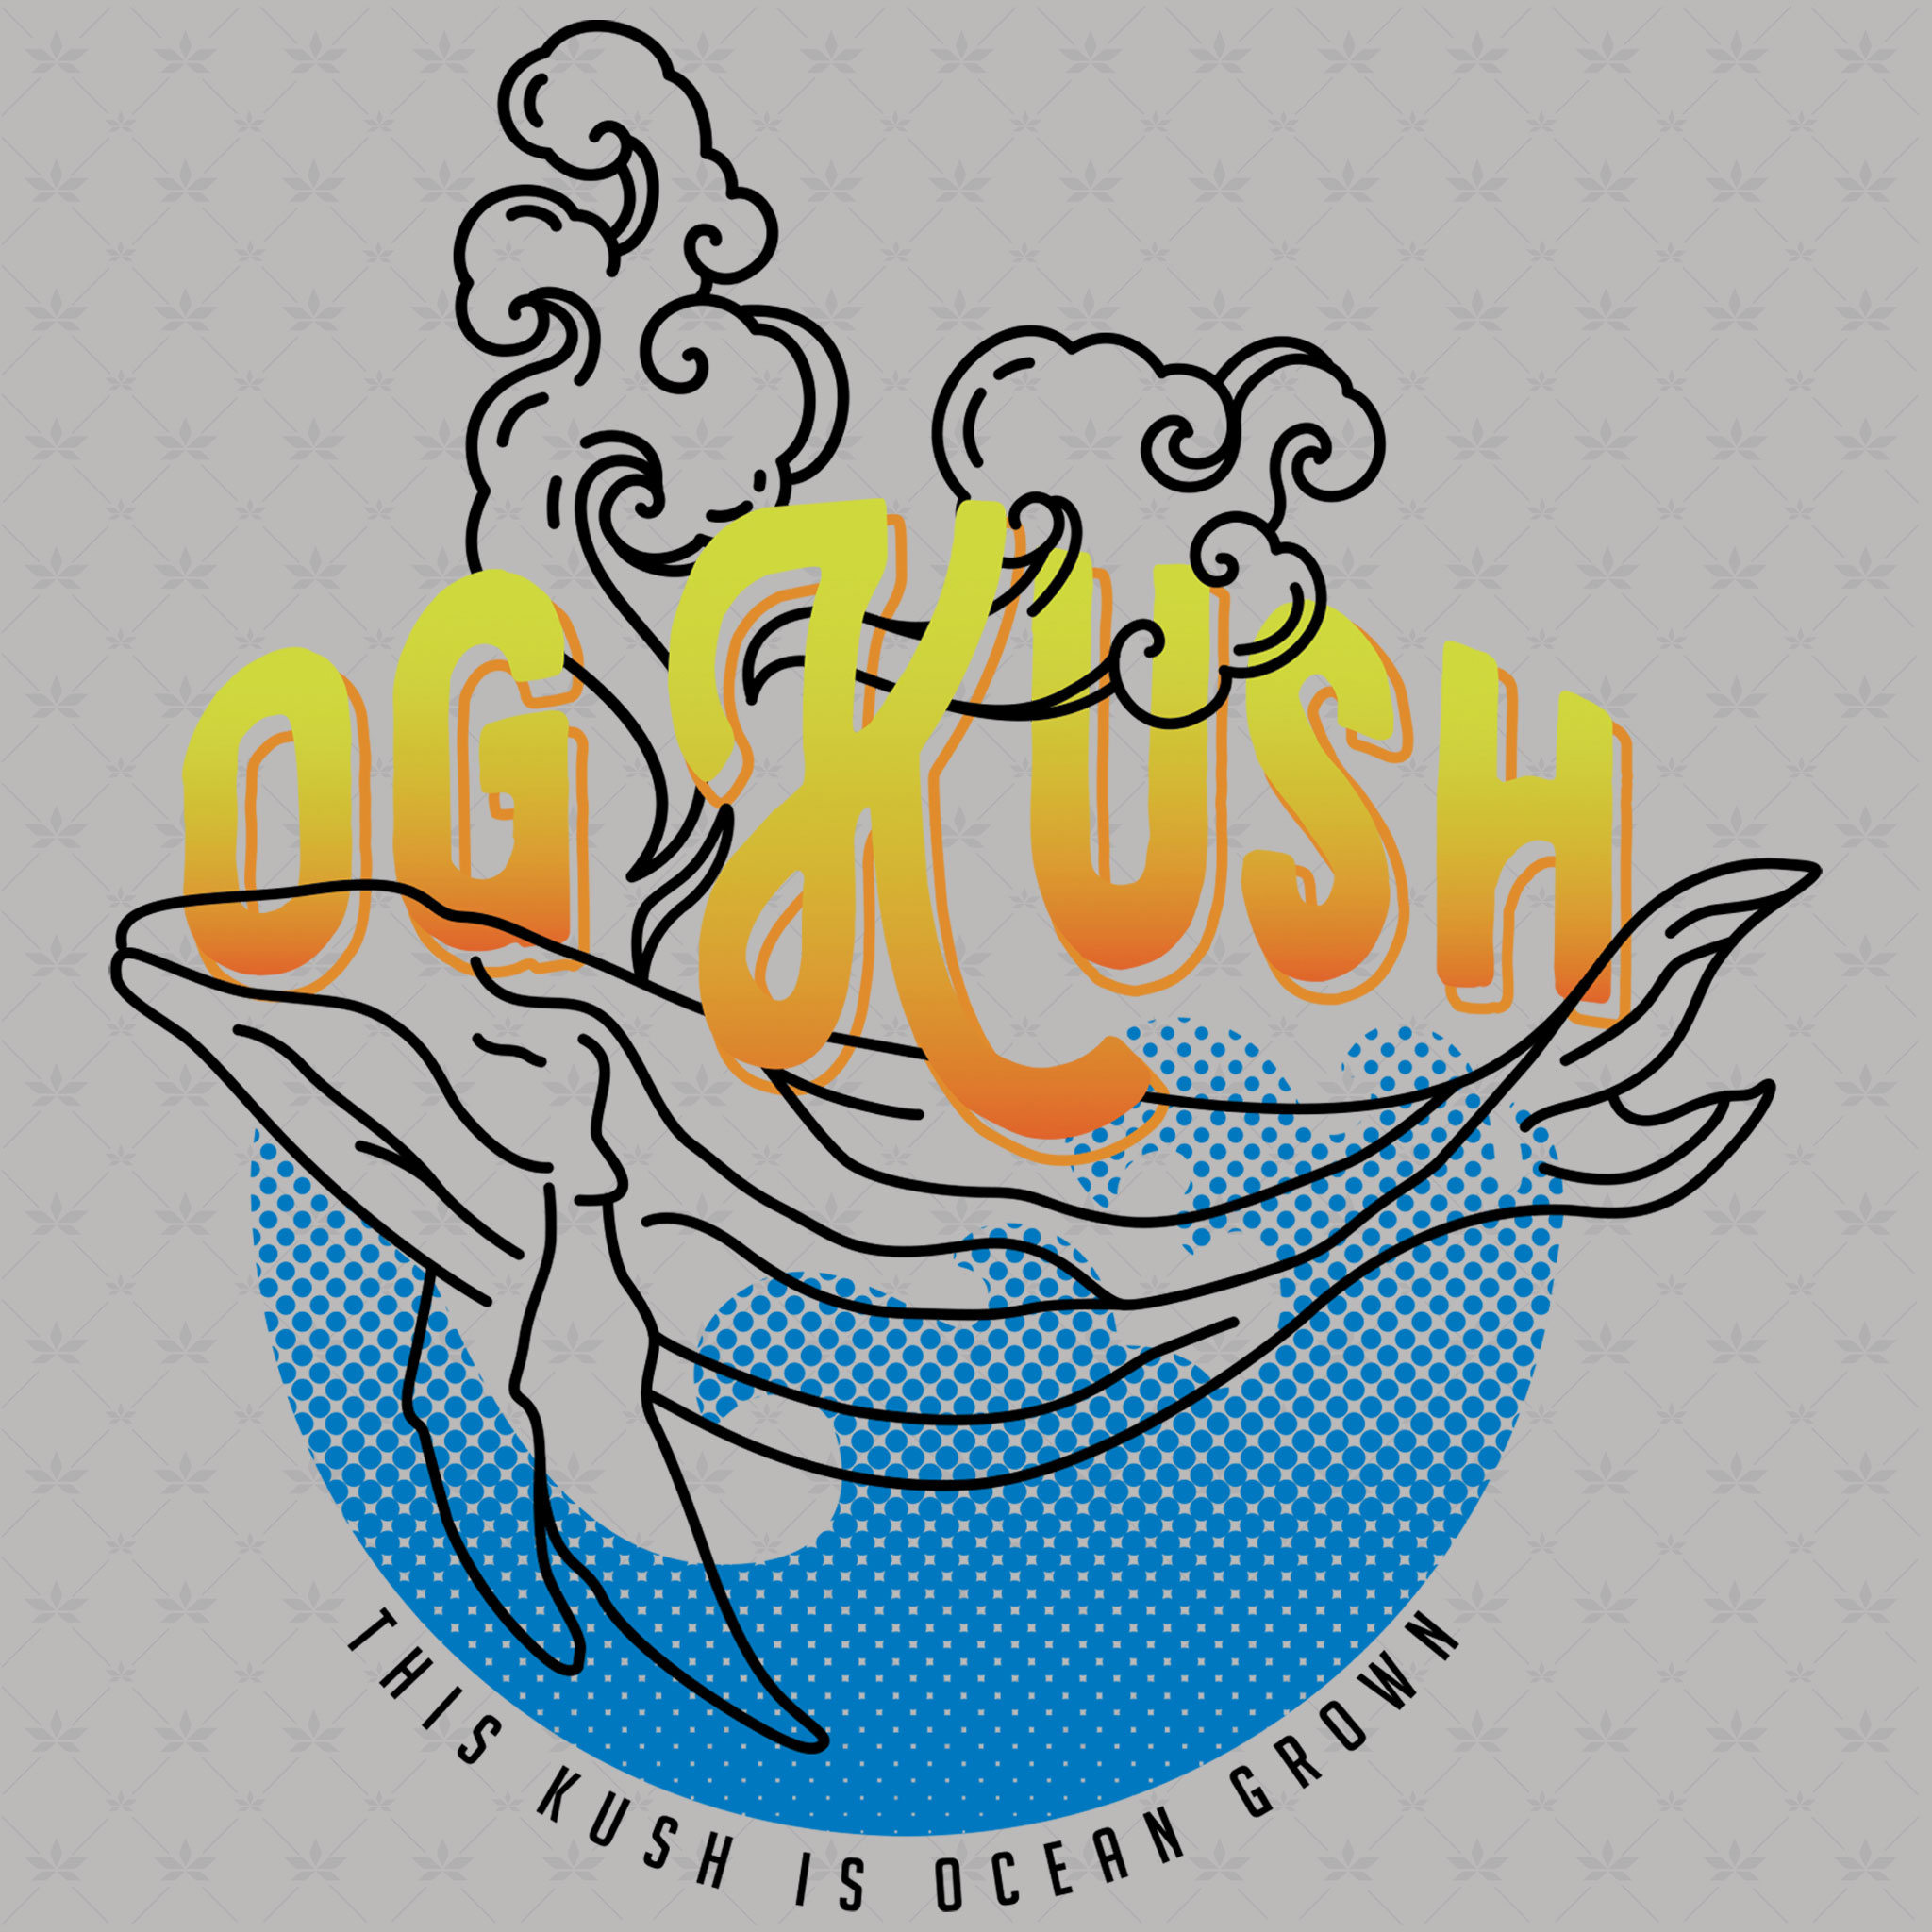 OG Kush ‘Ocean Grown’ Strain